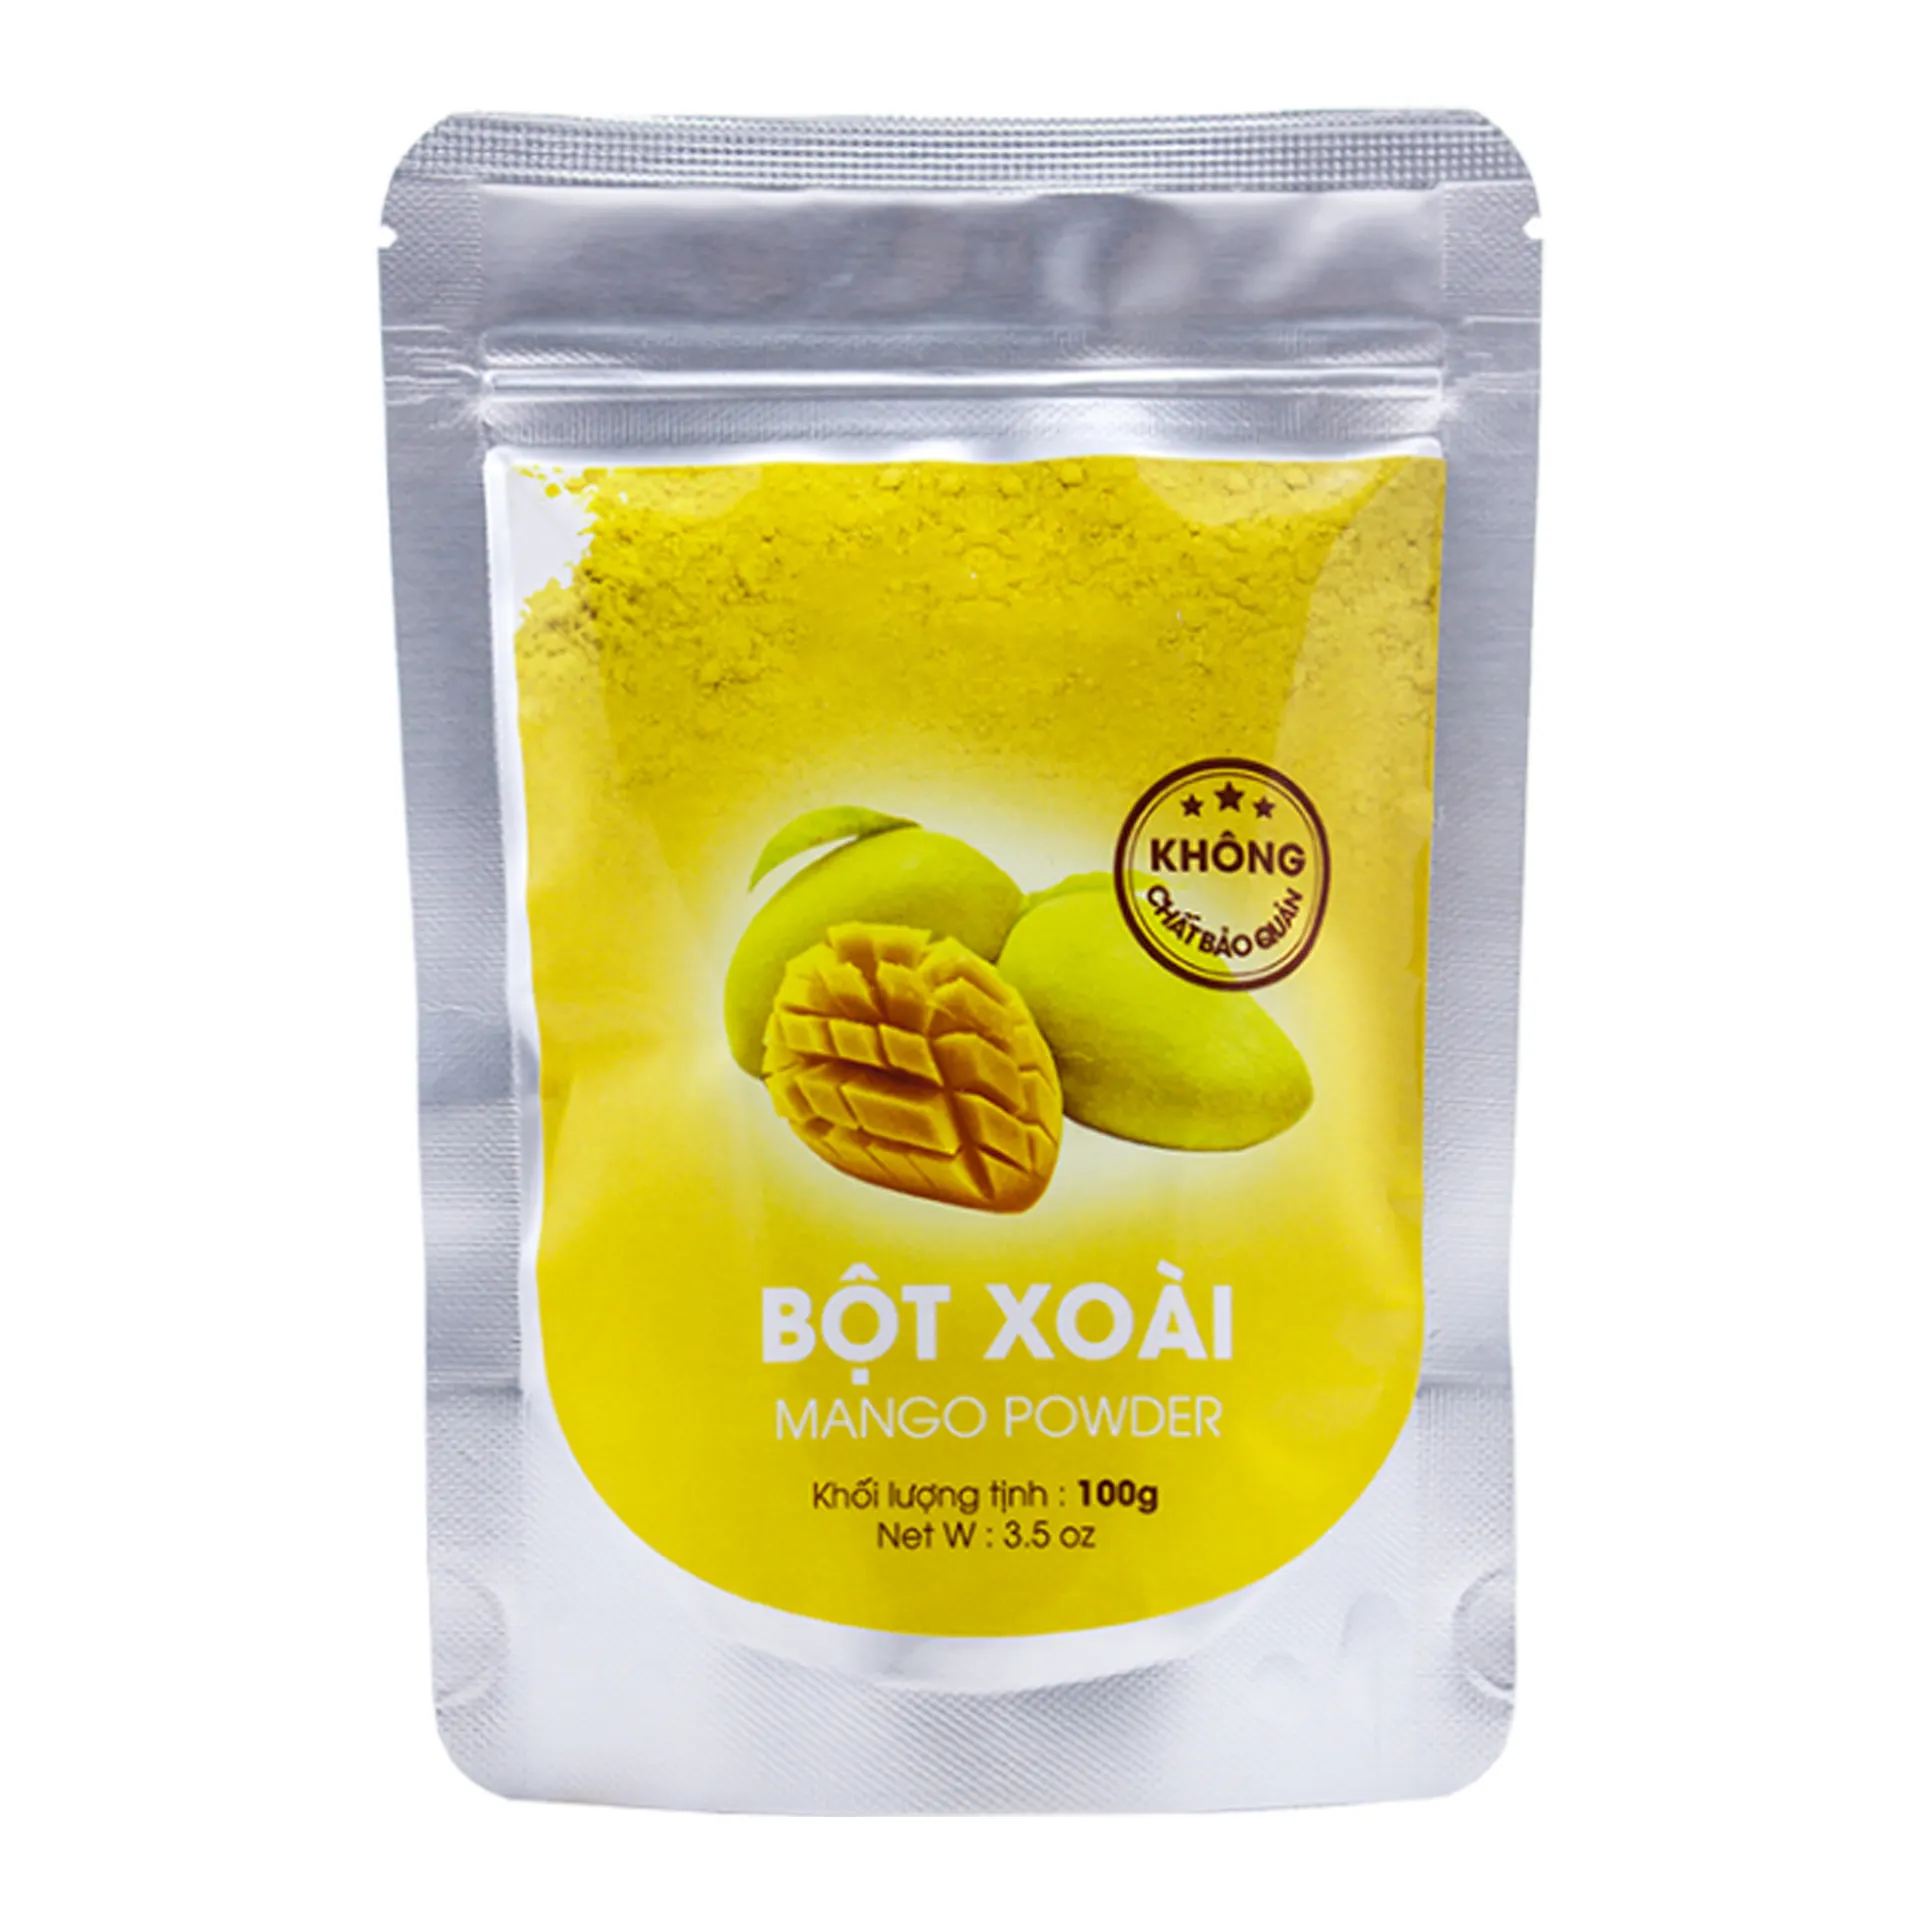 Premium kalite Mango tozu vietnamca toptan tedarikçisi